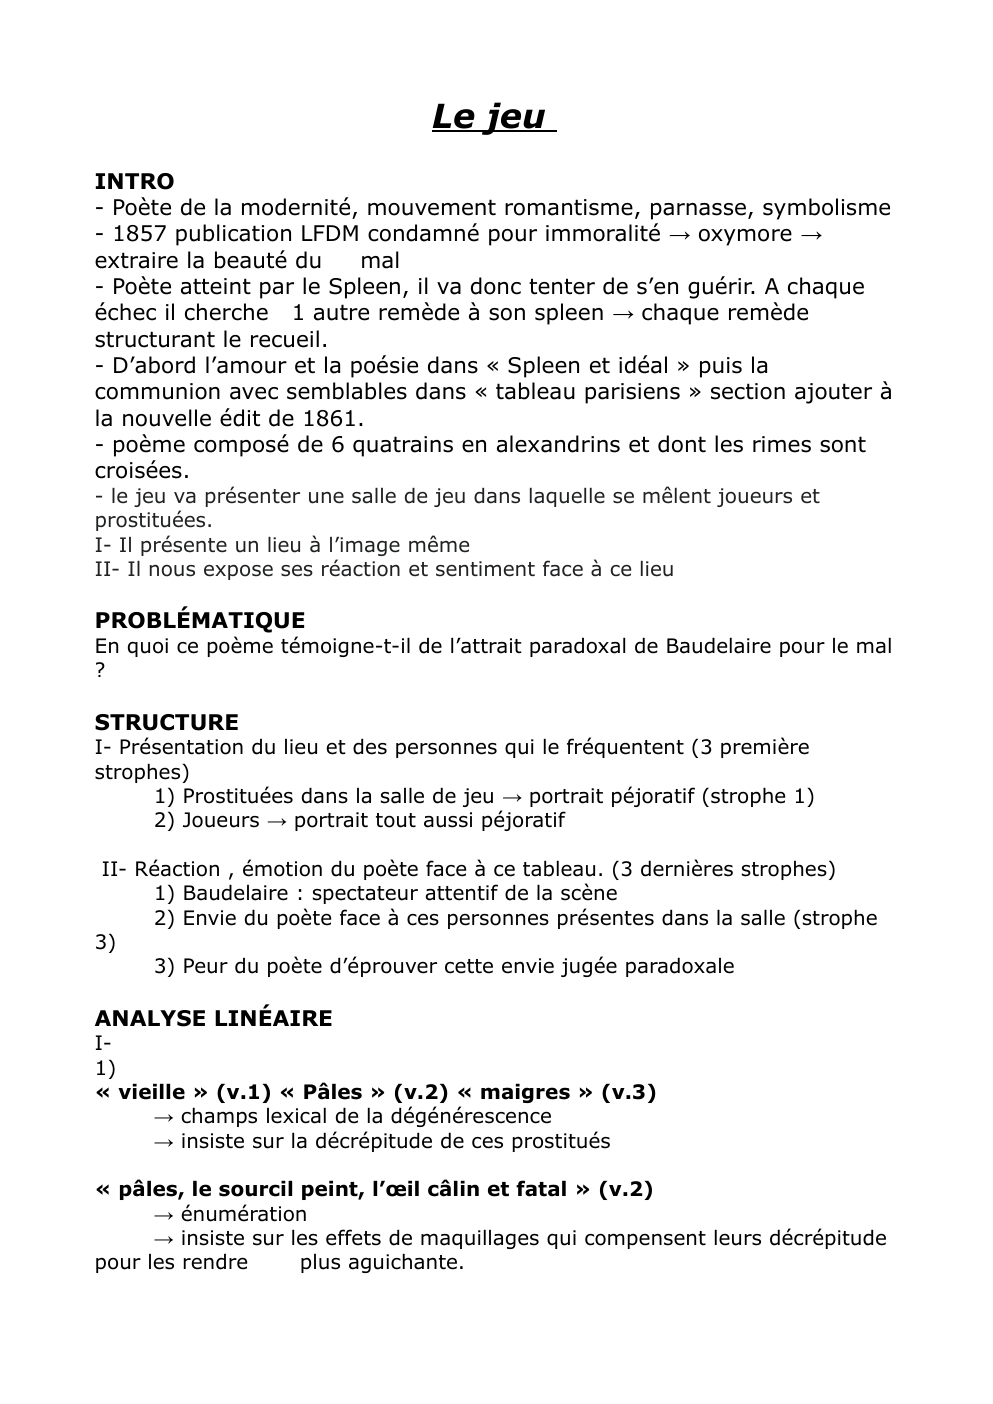 Prévisualisation du document Texte bac de Français (le jeu de Baudelaire)